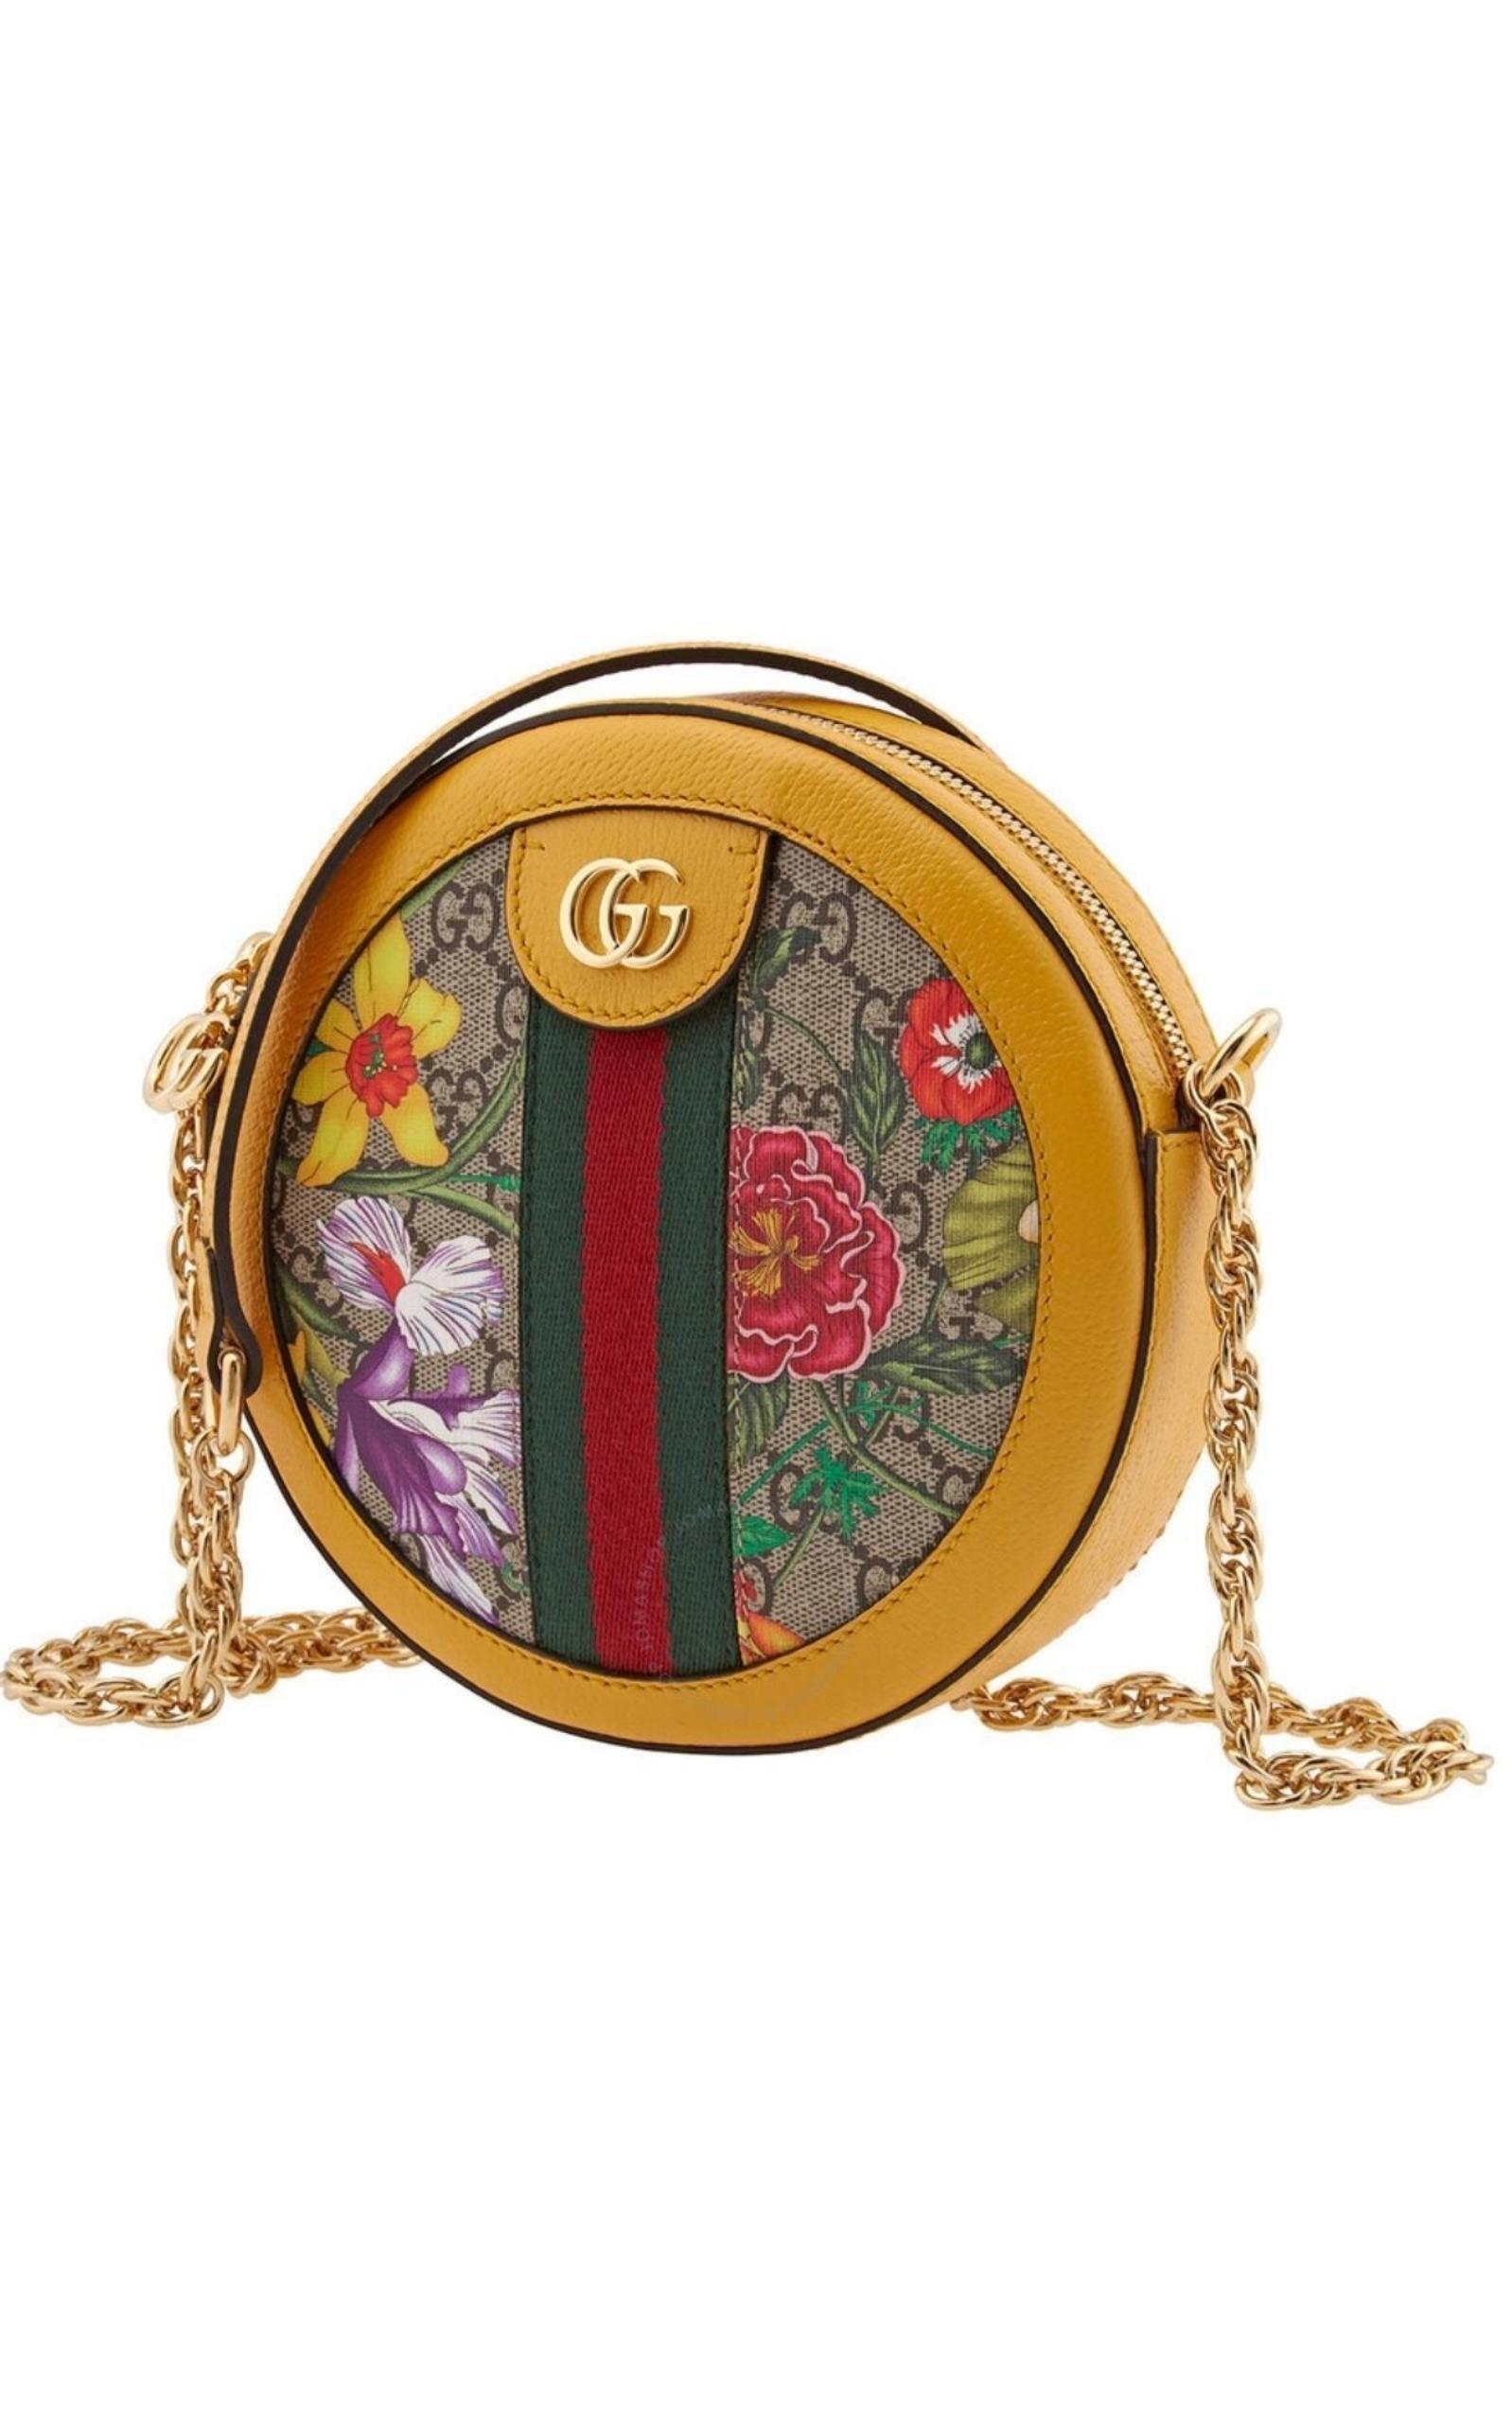 SNEAK PREVIEW @ FE Brand/Model: Gucci 499621 GG Supreme Floral